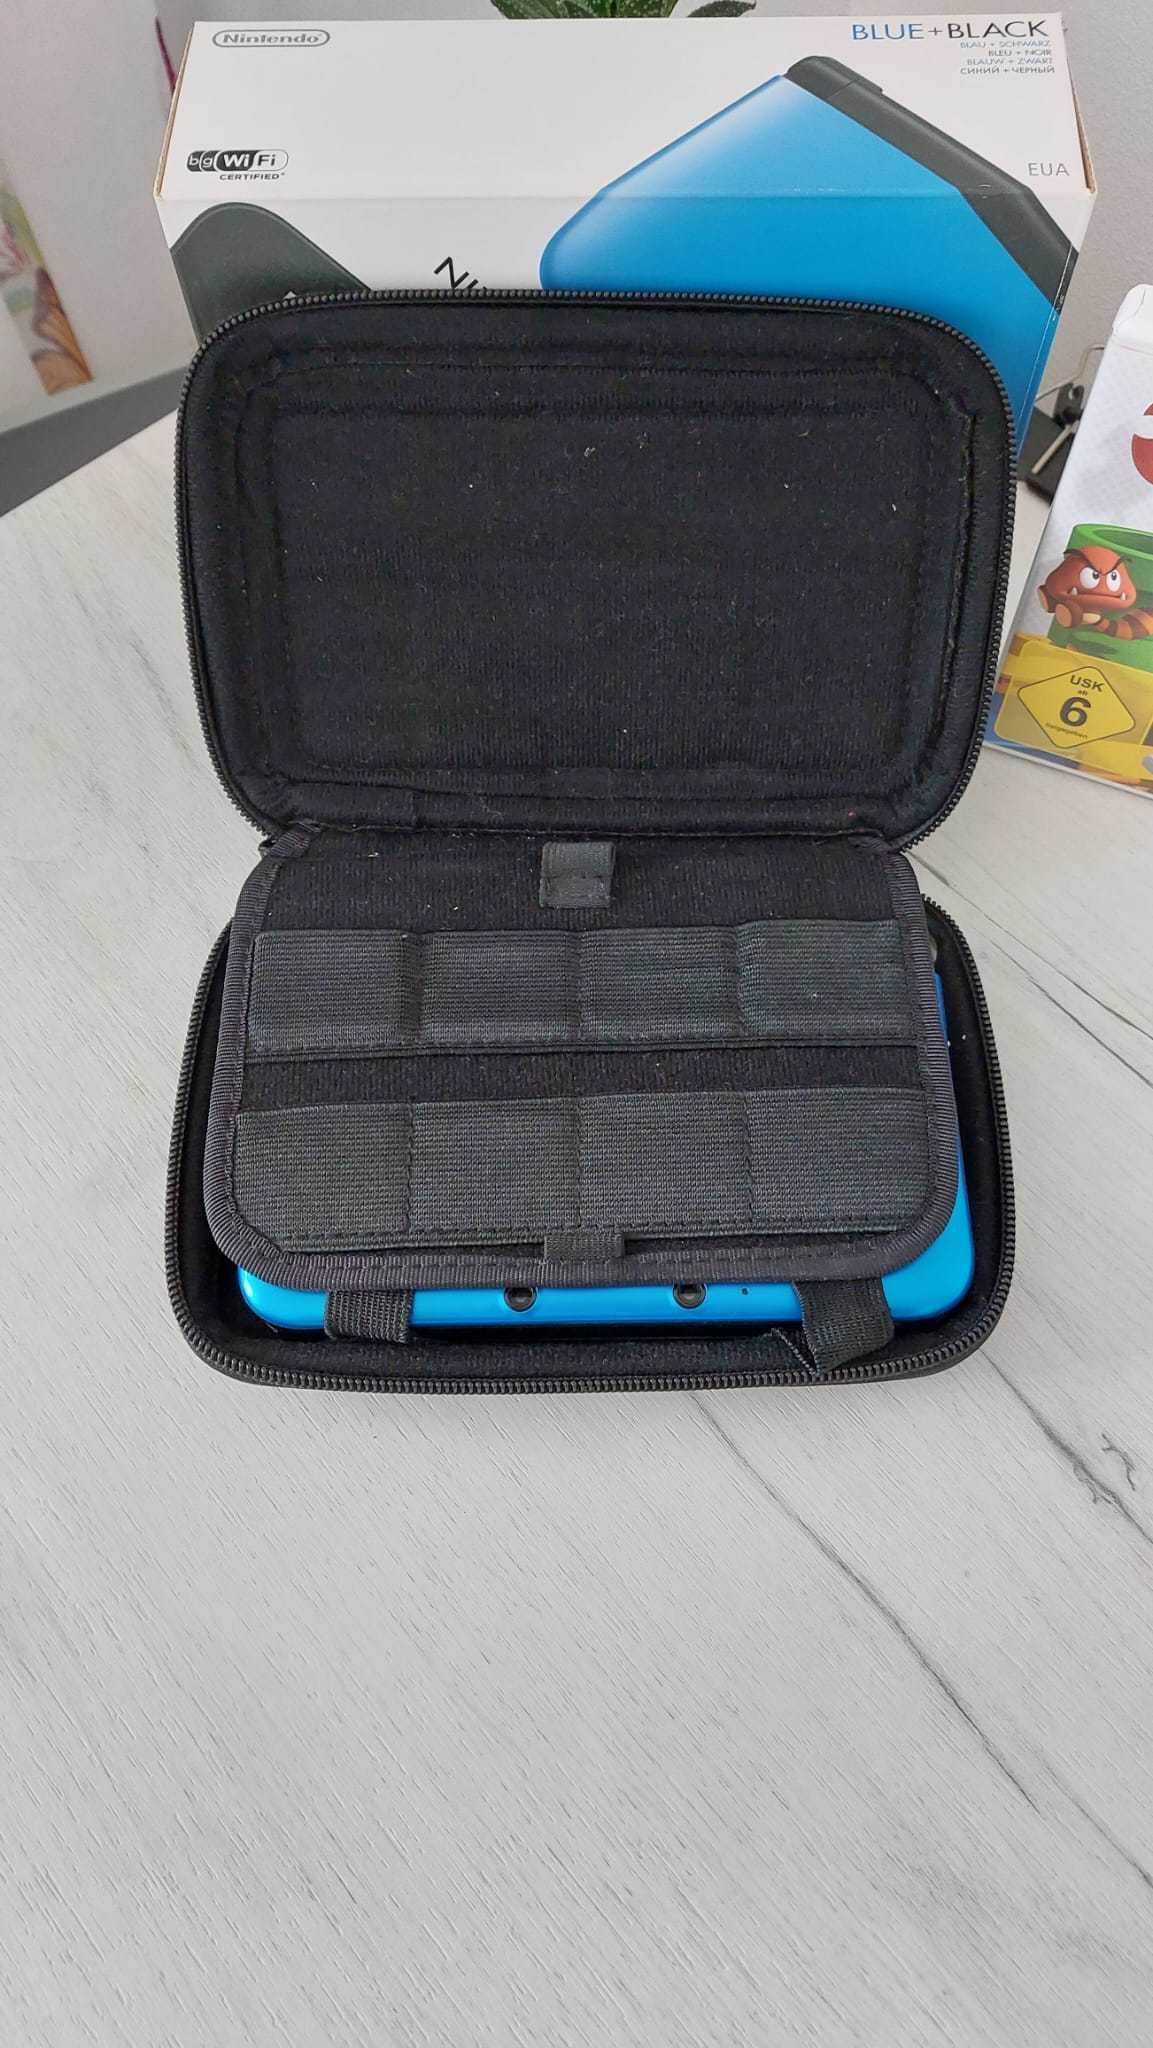 Vand 3DS XL Blue + Black cu jocuri si accesorii !